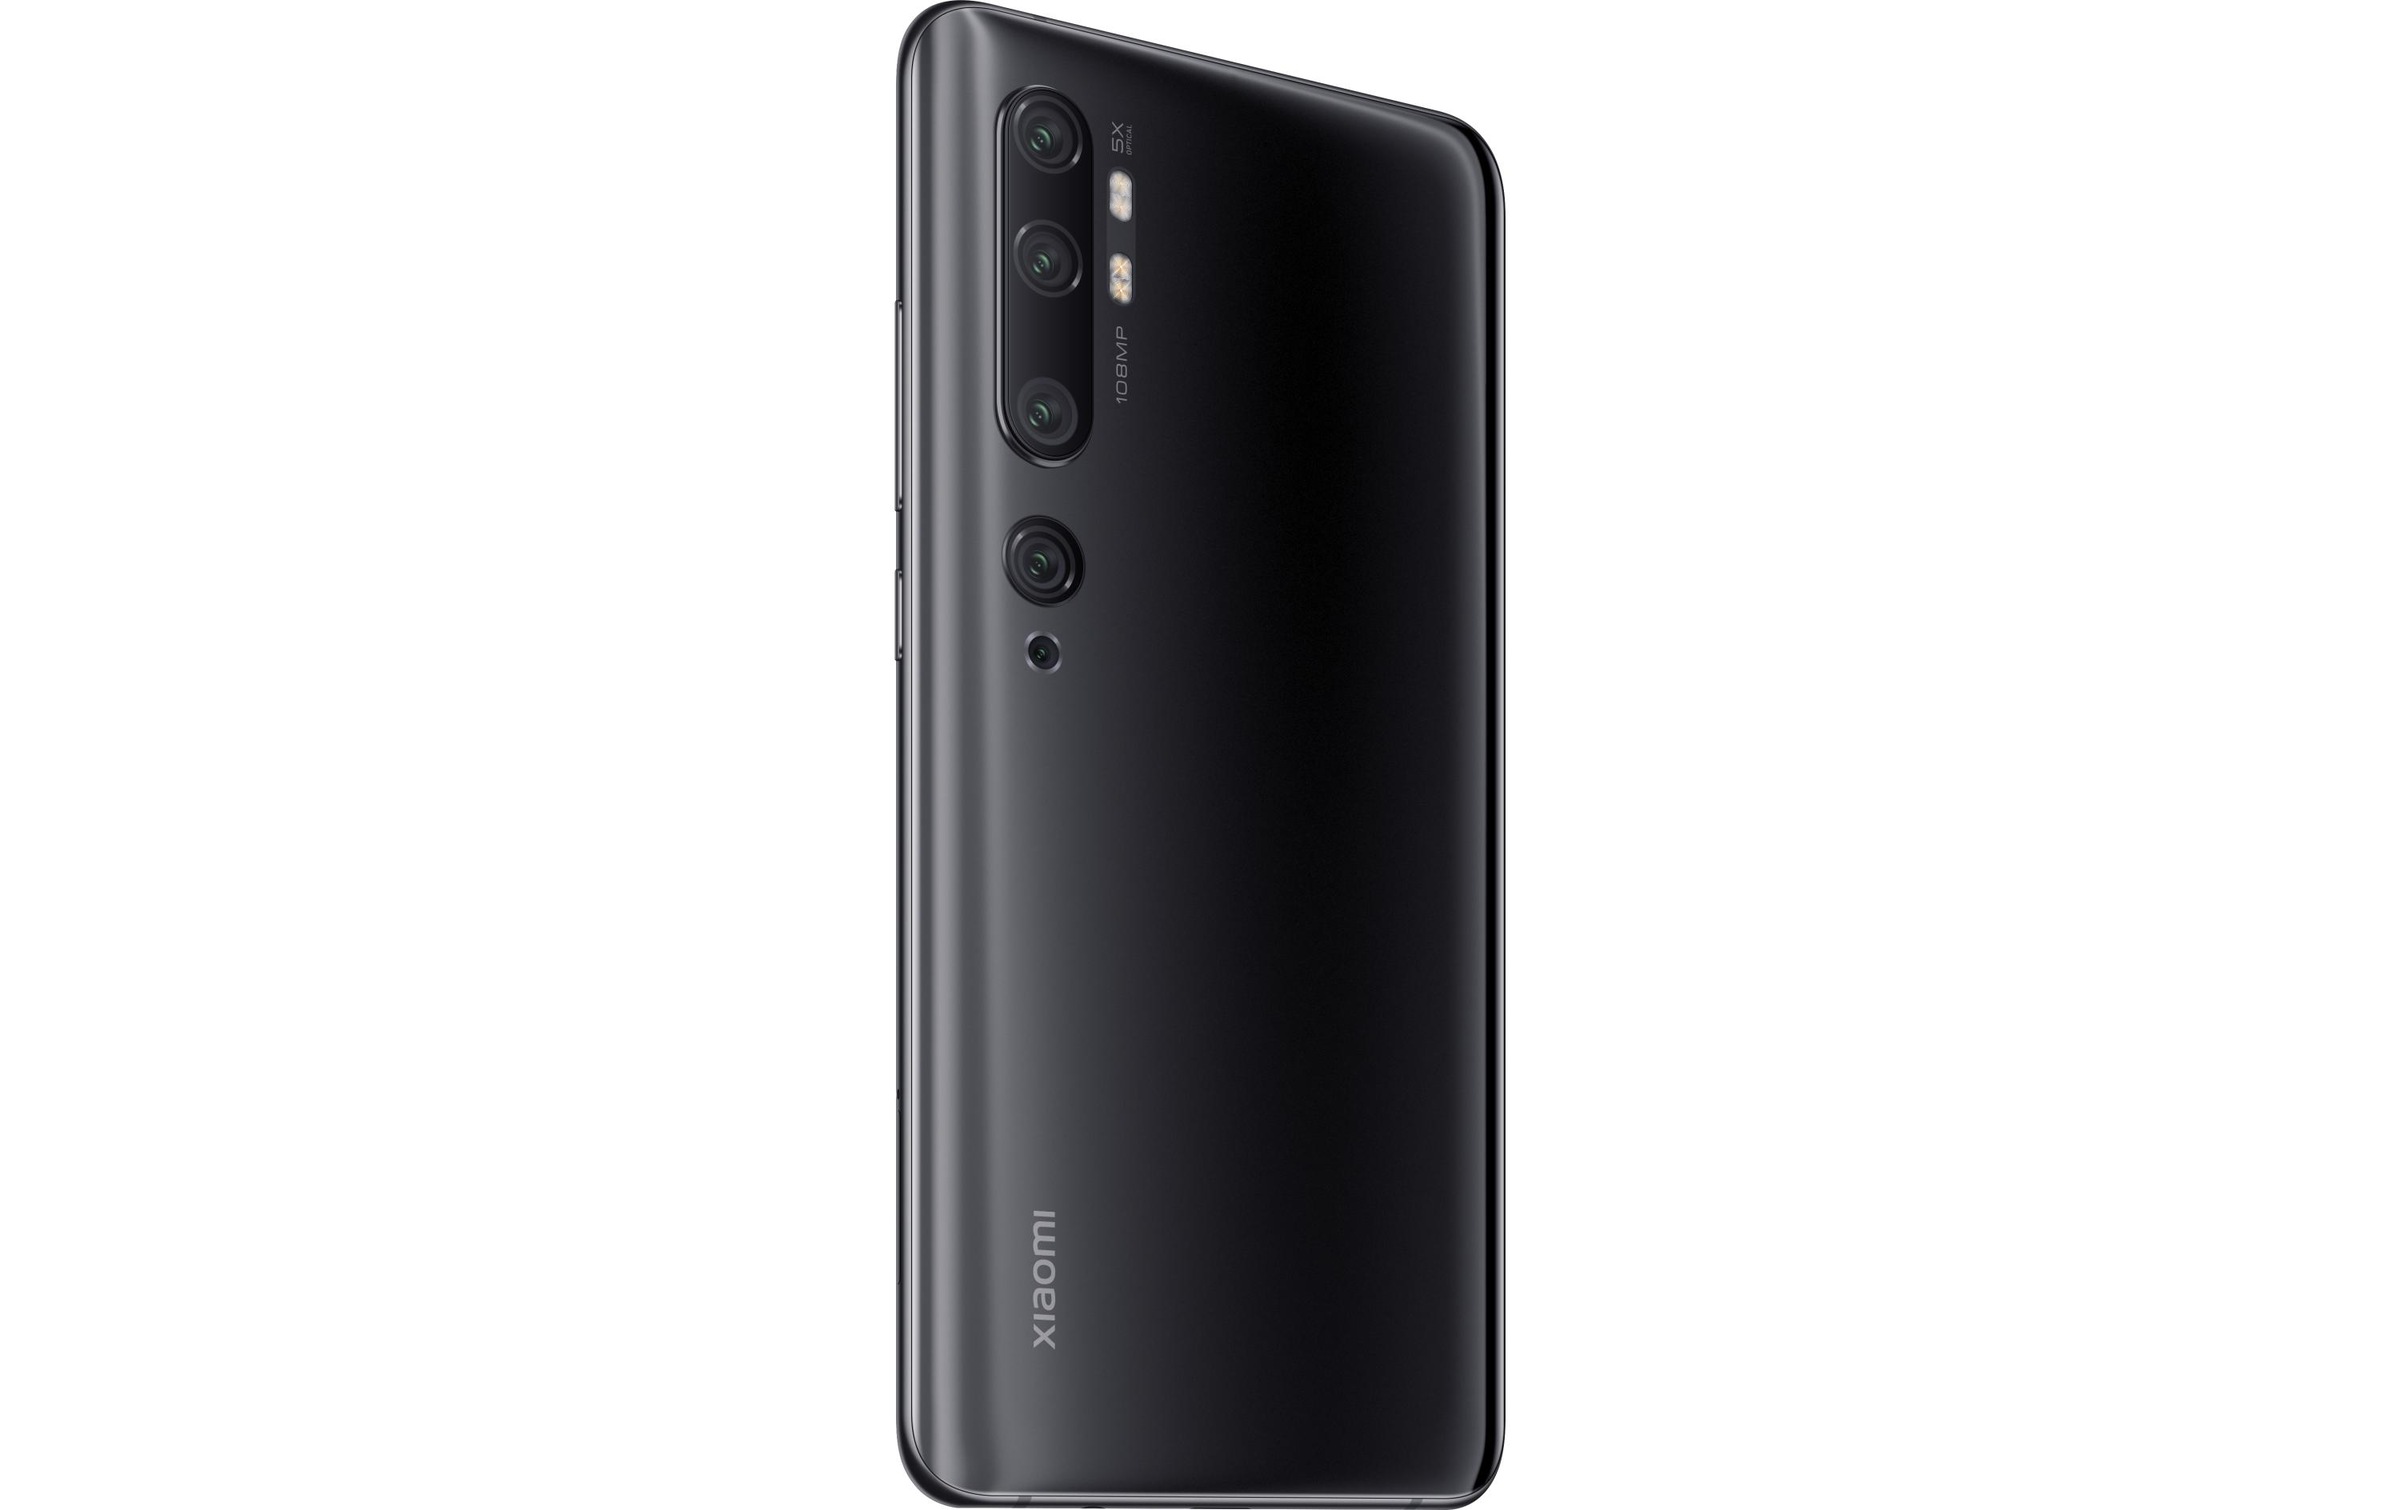 Xiaomi Smartphone »Mi Note 10 Pro 256GB Schwarz«, schwarz, 16,43 cm/6,47 Zoll, 256 GB Speicherplatz, 108 MP Kamera